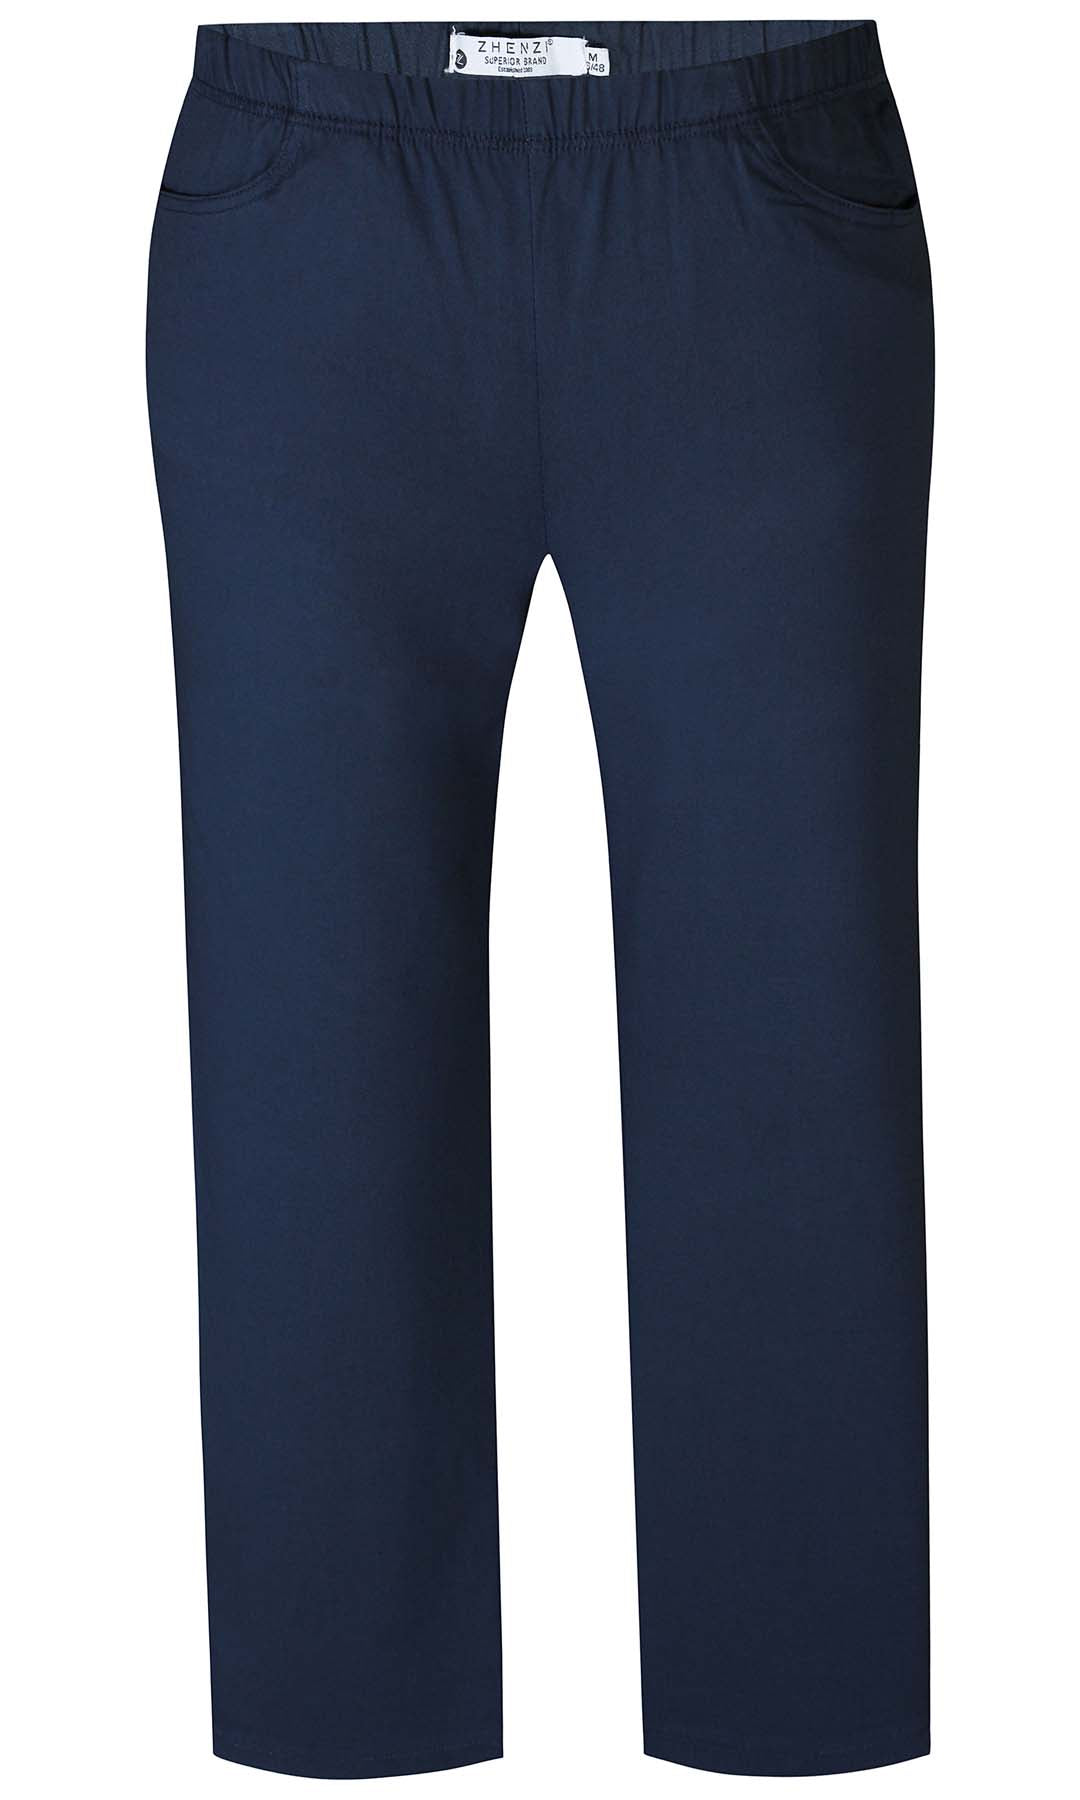 Jazzy 65 - Tidløse marine blå bukser i Bengalin stof med lige ben: God stil og masser af stræk | ZHENZI |